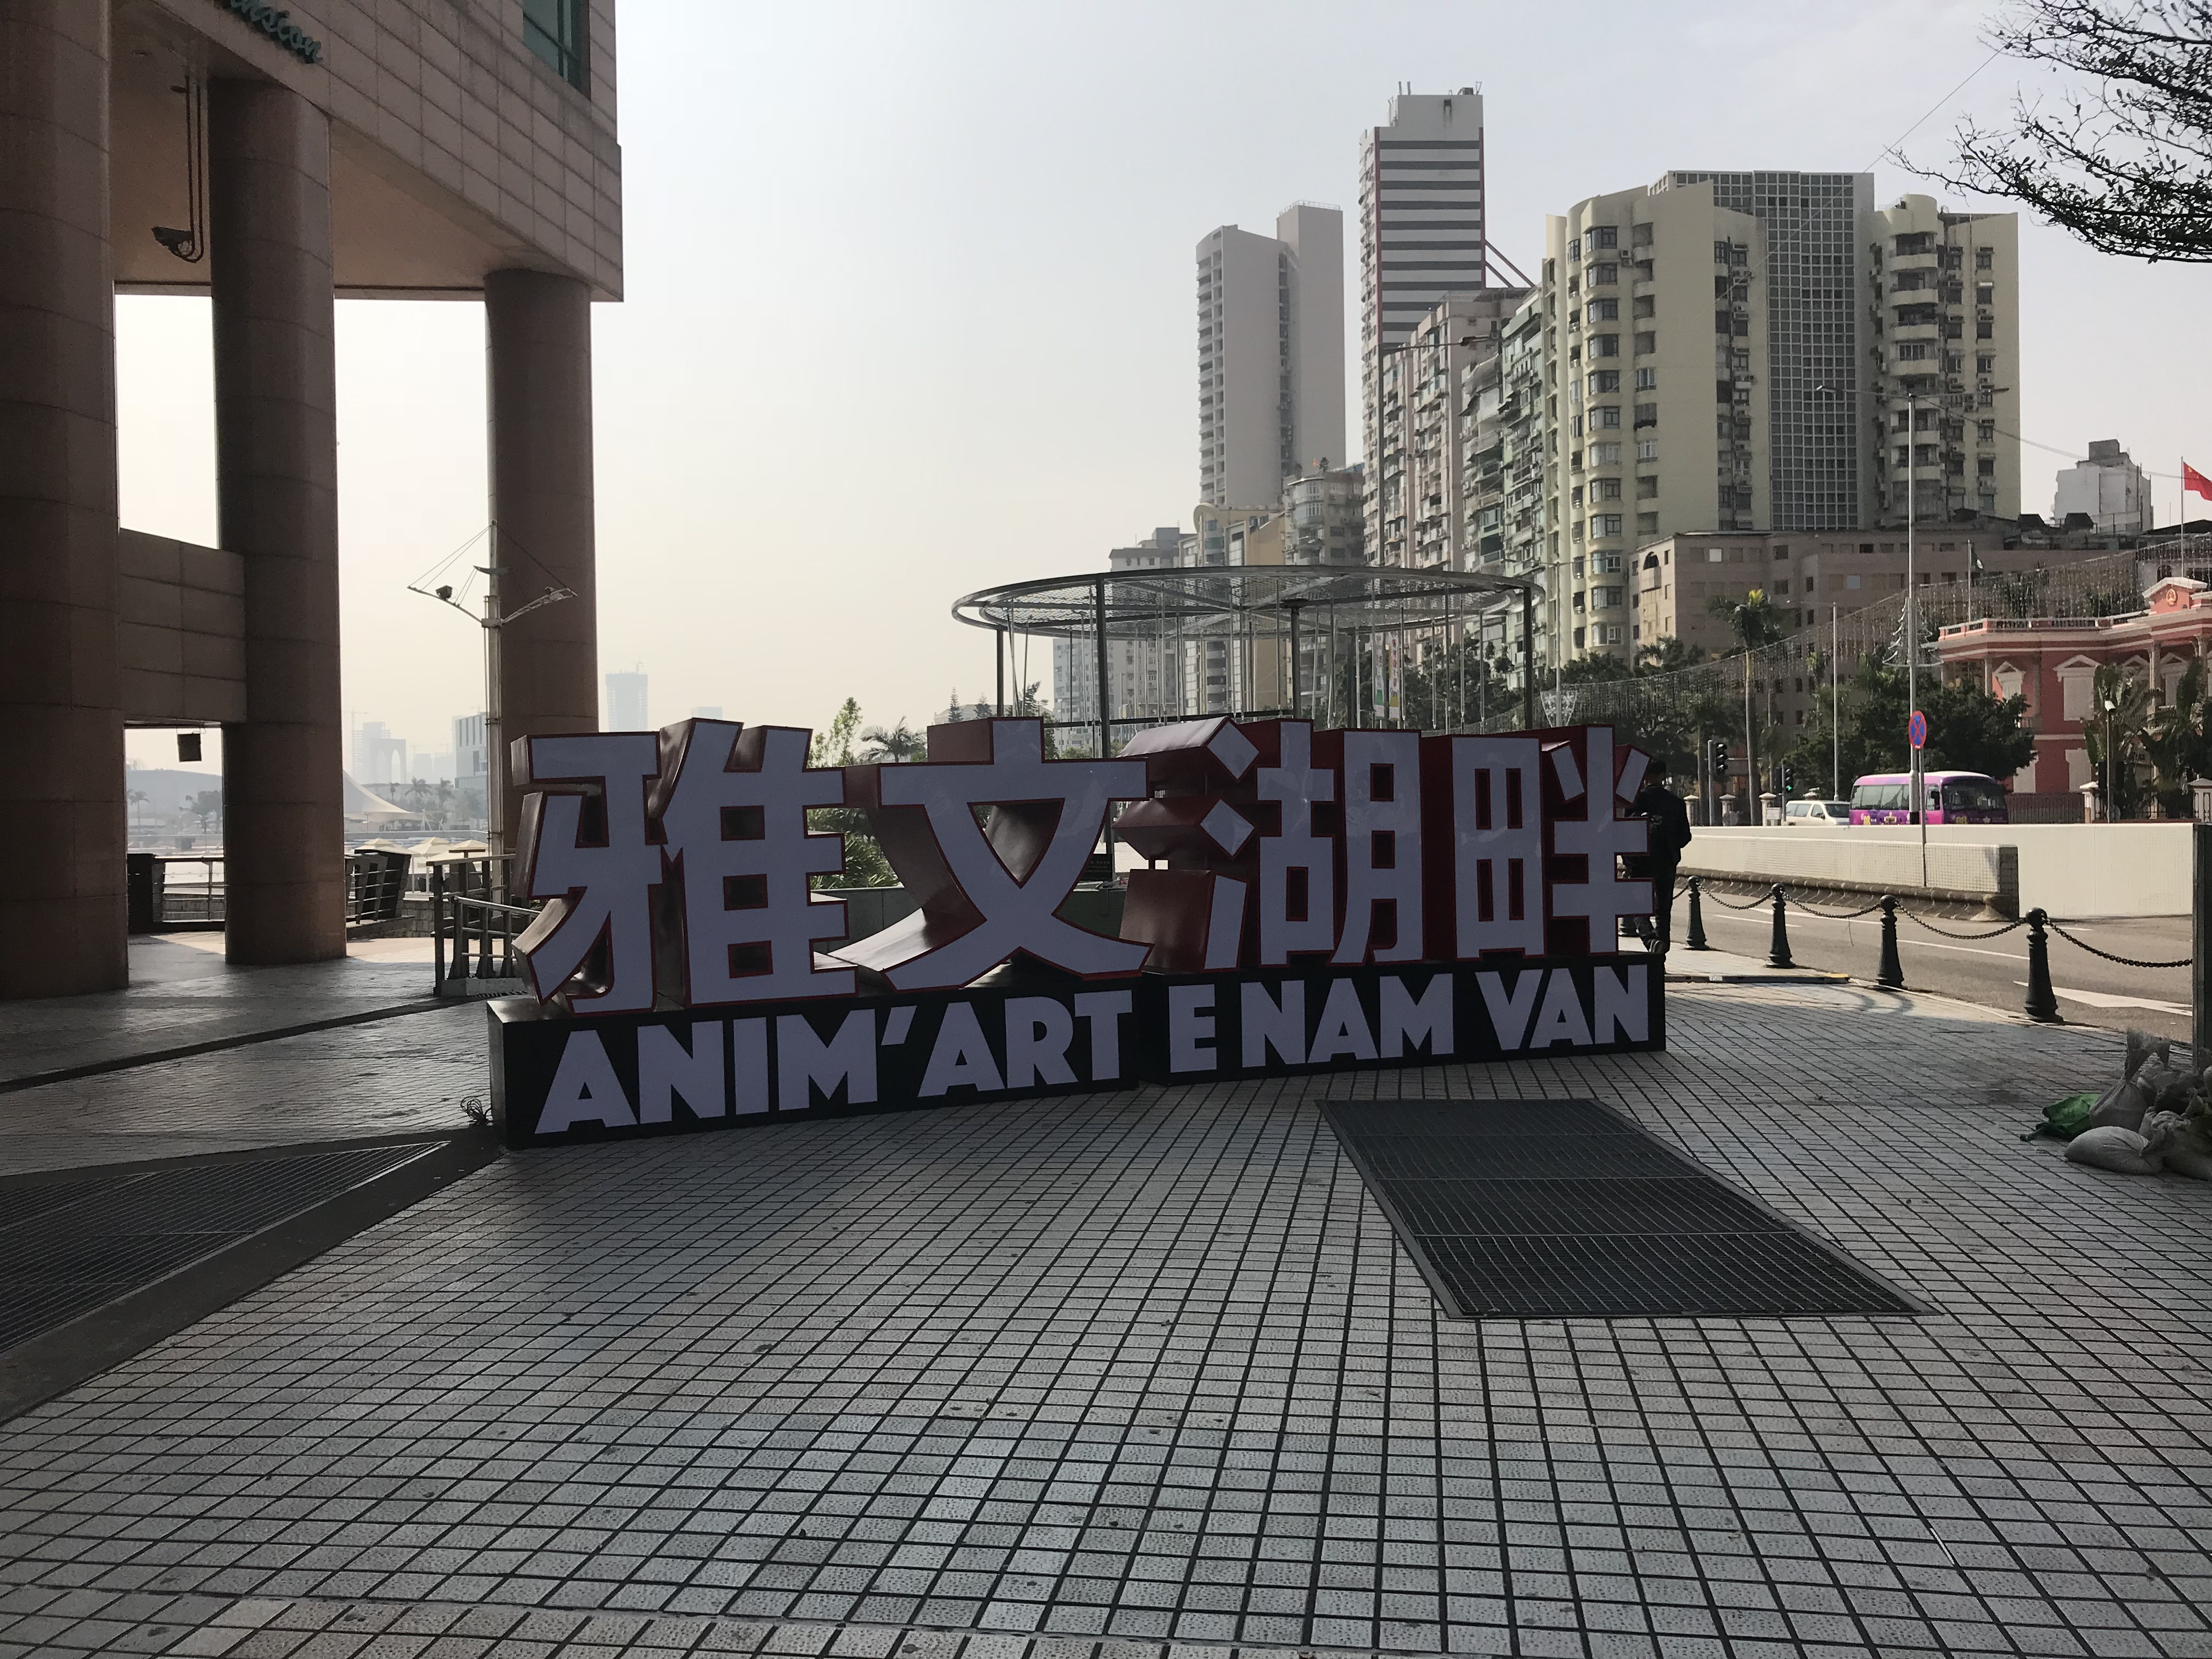 Anim’Arte | Agência da China vai explorar restaurantes e lojas